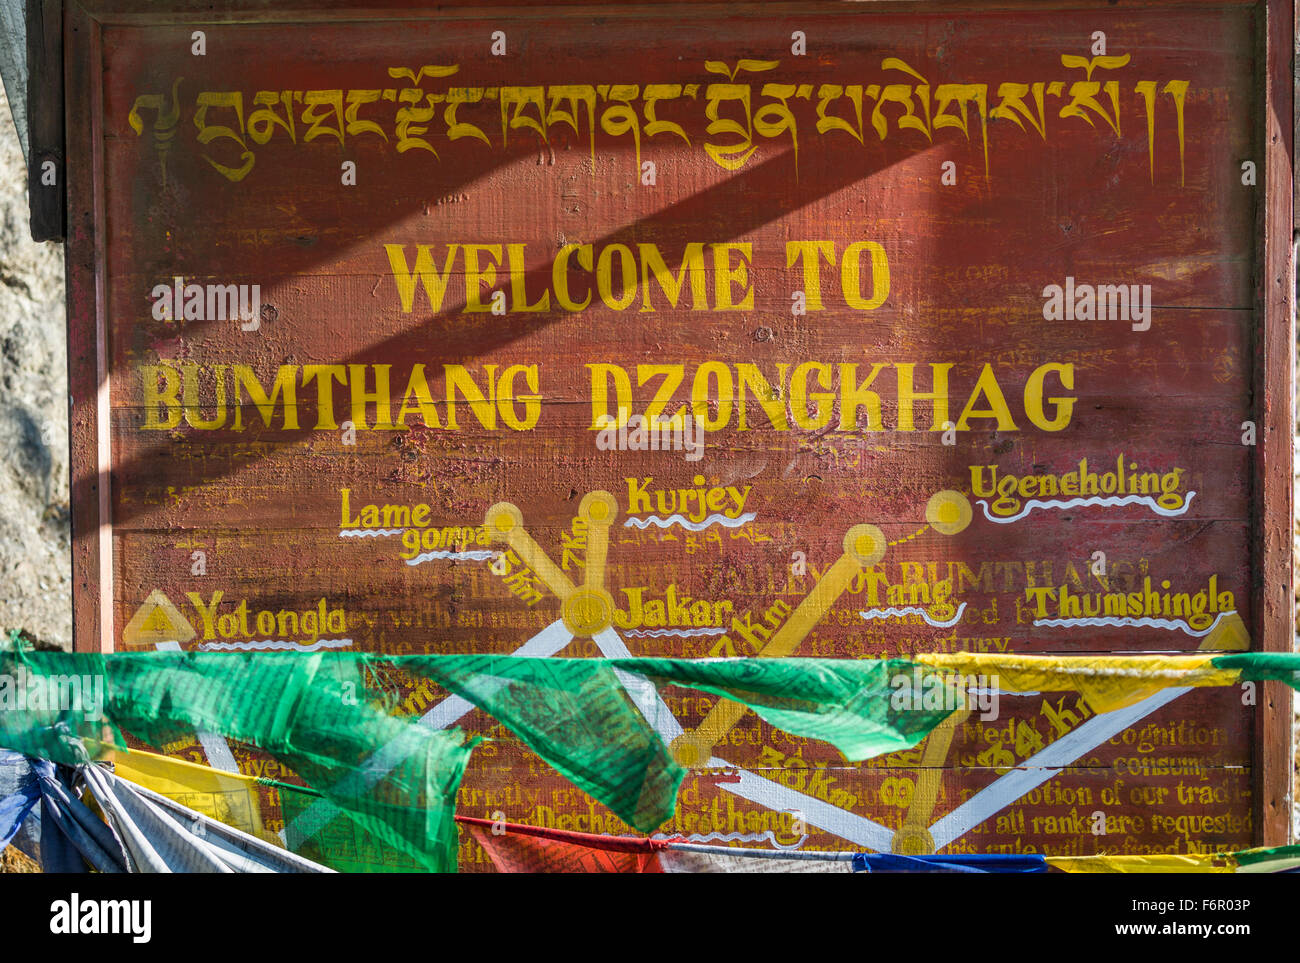 Bumthang Dzongtag sign, Bhutan Stock Photo